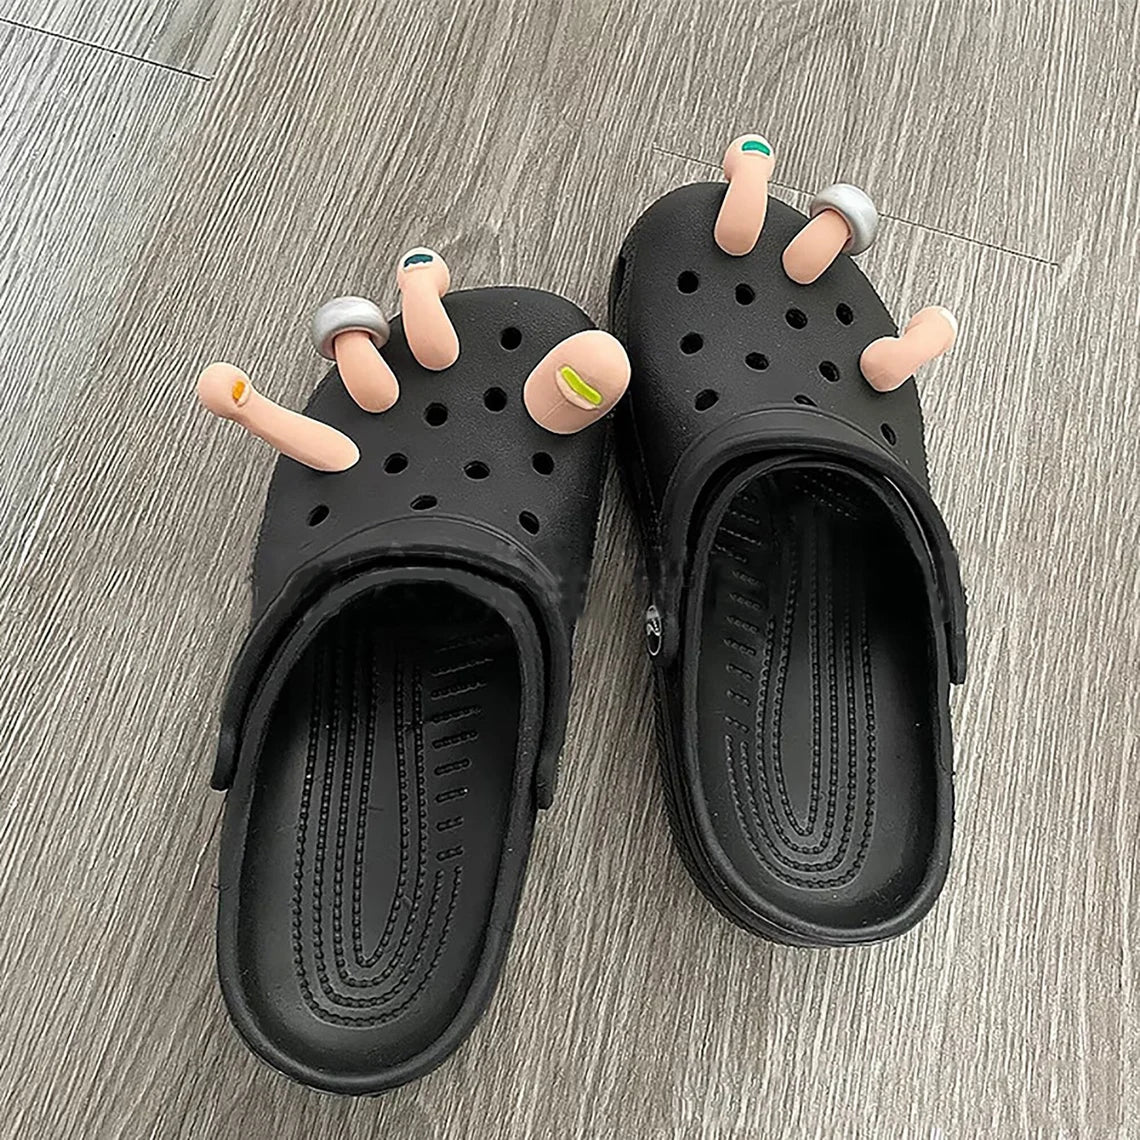 Realistic Croc Toes (Set Of 7)